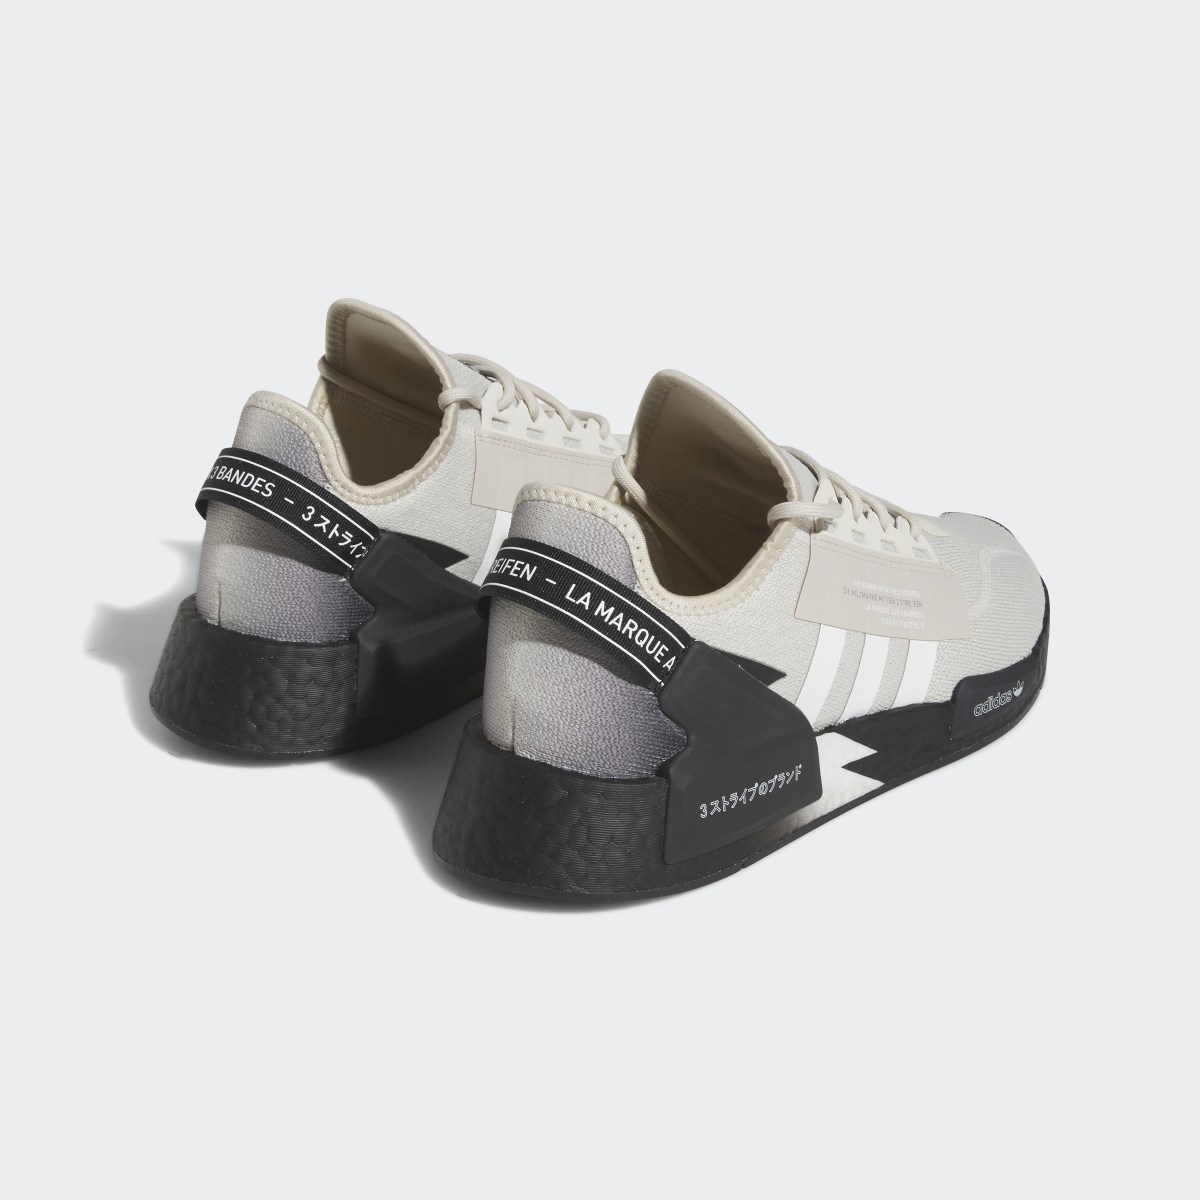 Adidas NMD_R1 V2 Shoes. 9